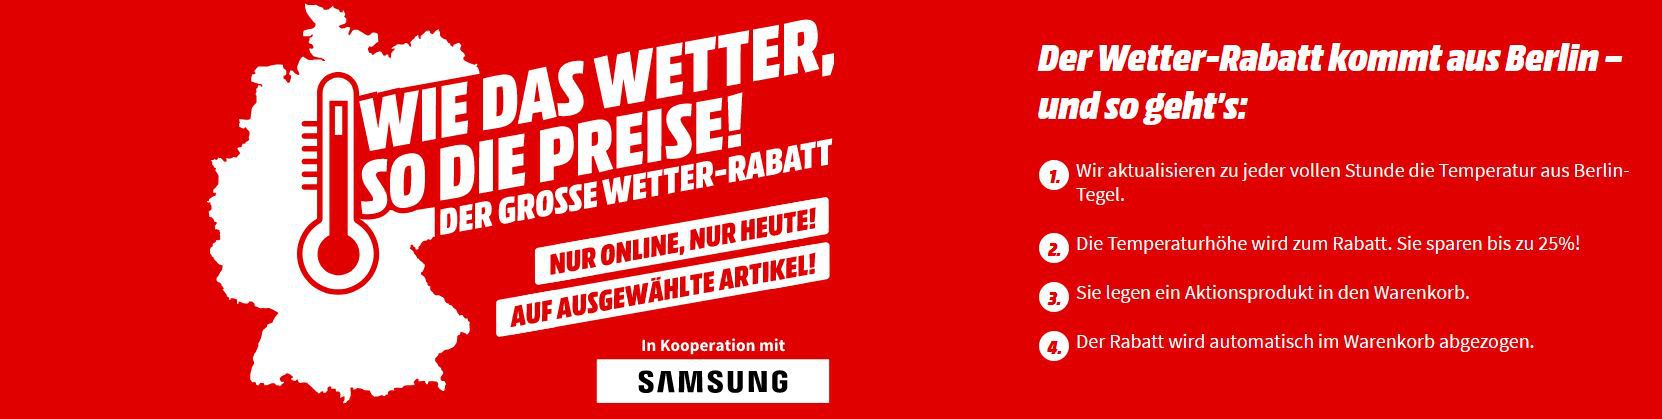 Bis 17 Uhr! 24% Rabatt auf ausgewählte Samsung Artikel: z.B. Samsung Galaxy S20 128GB für 531,24€ (statt 608€)